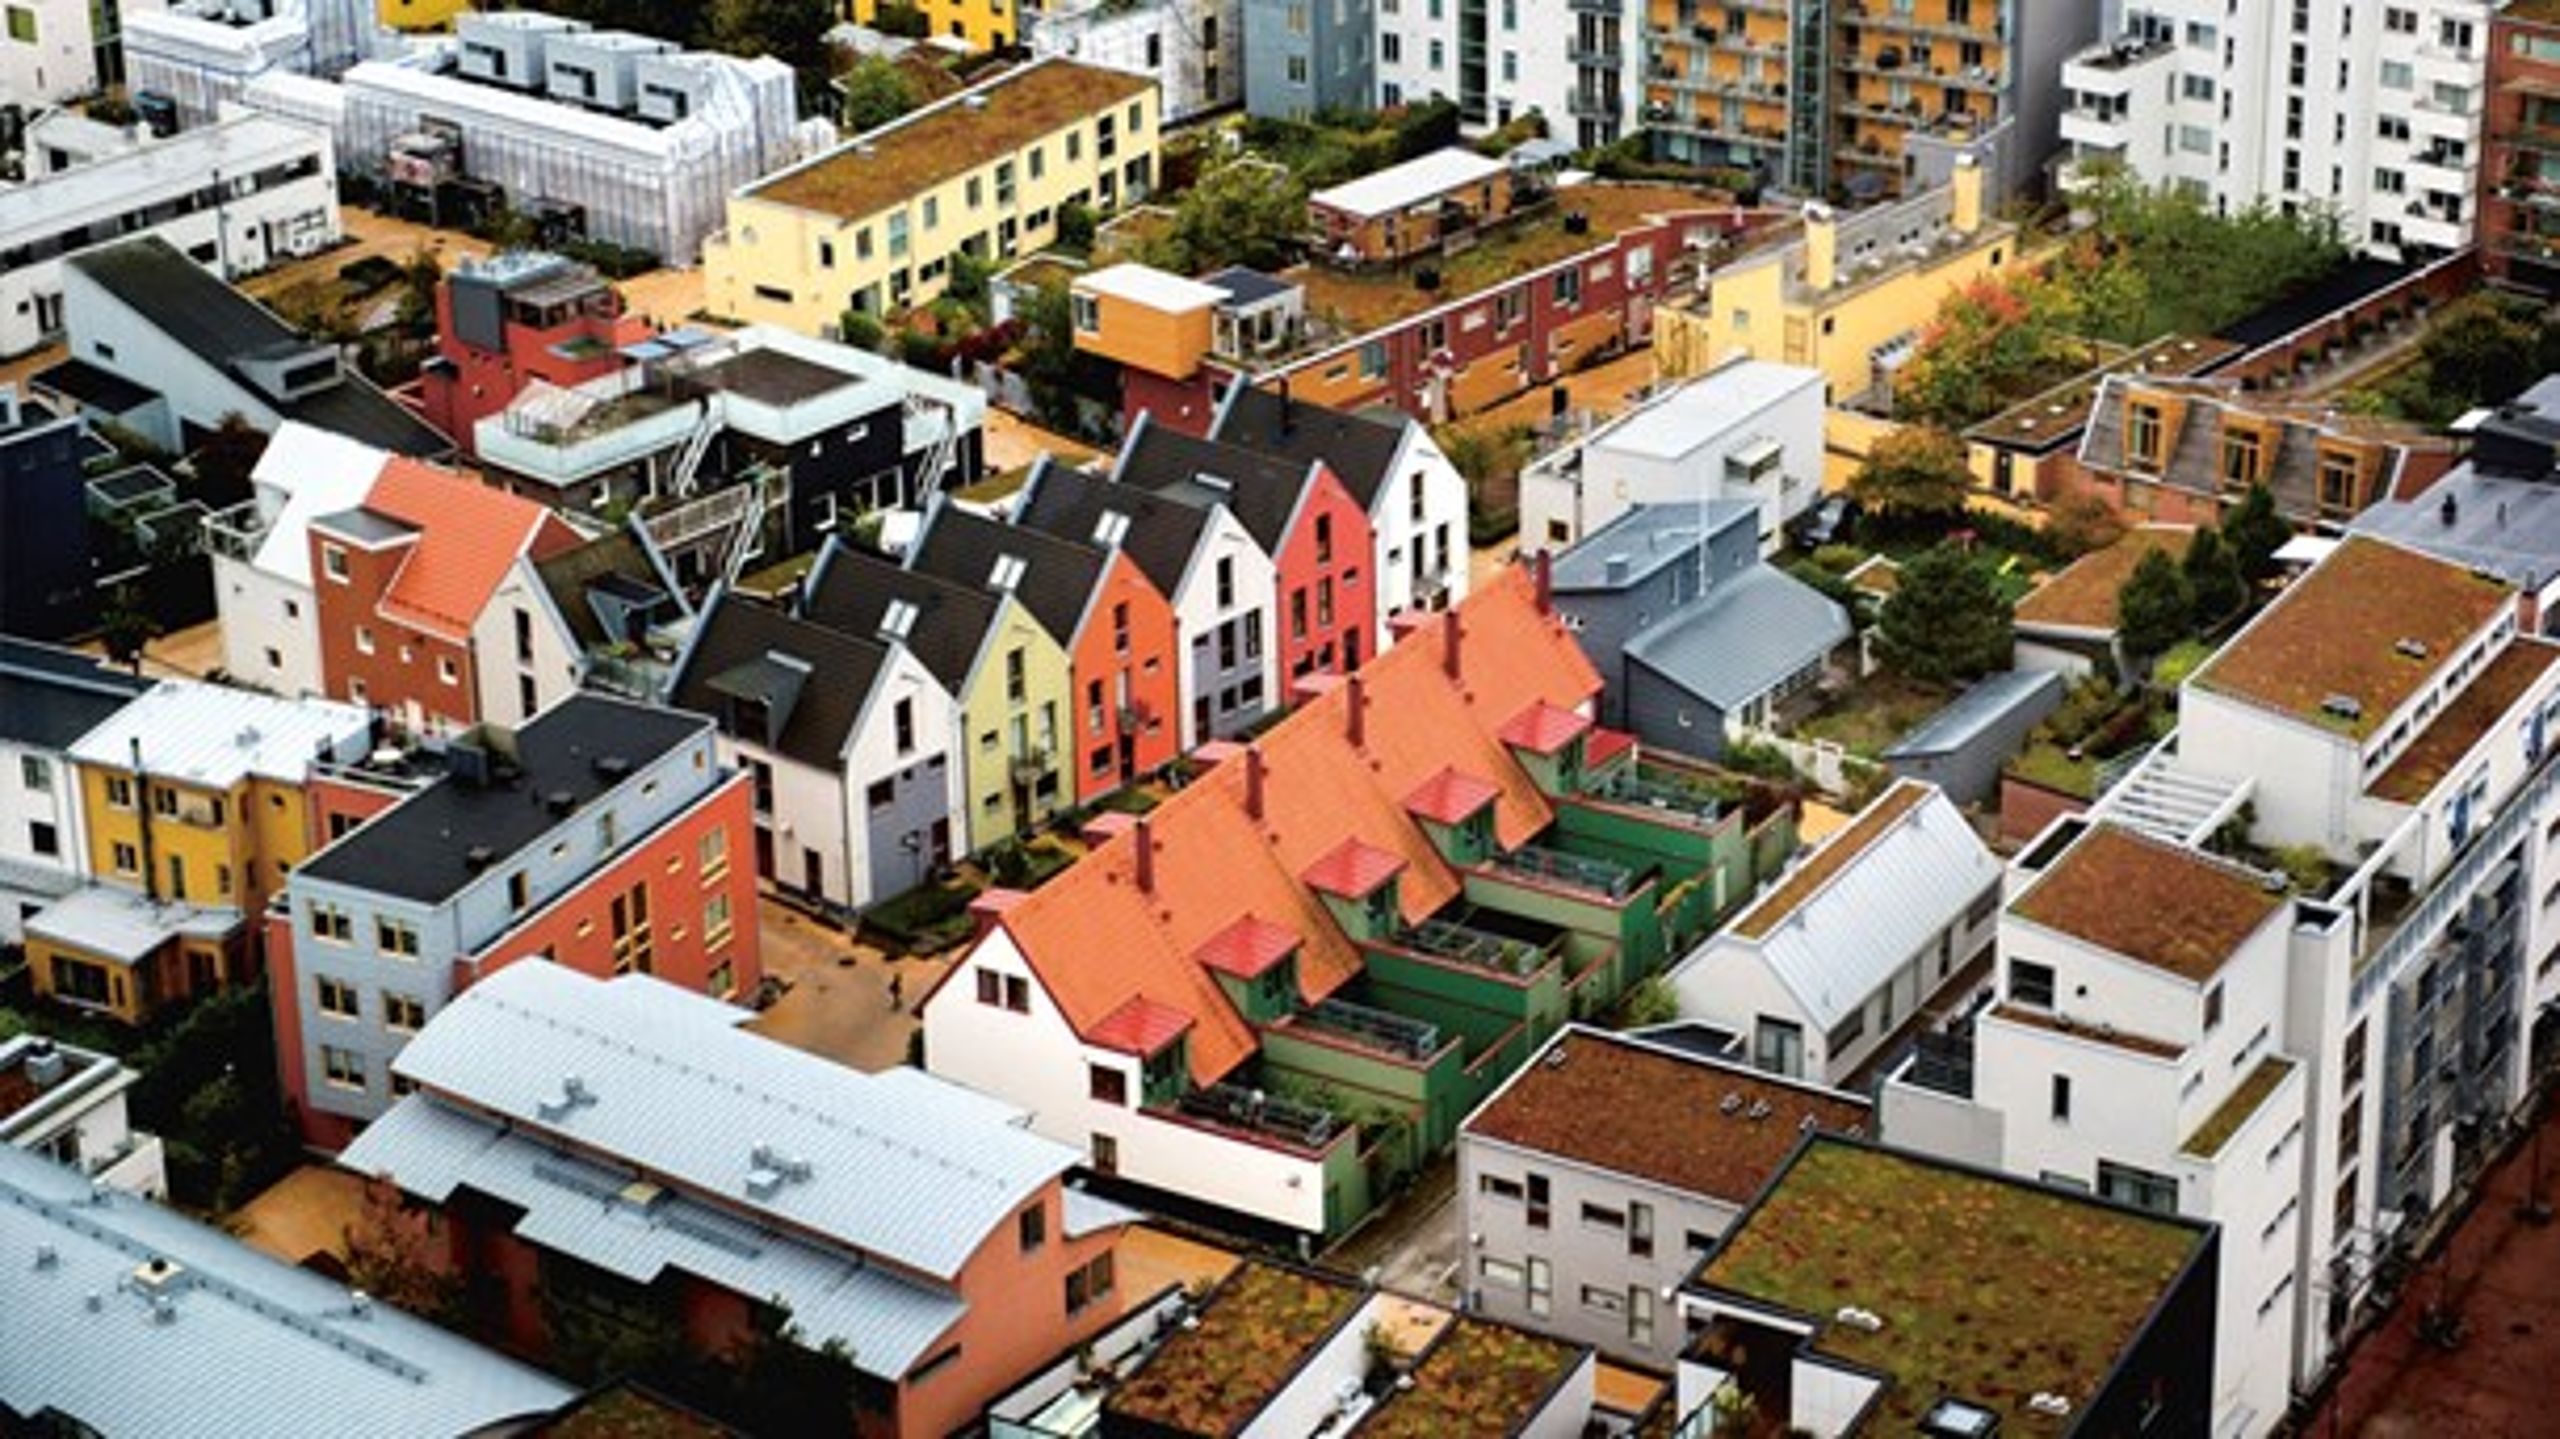 Byggeriet BO01 på de tidligere industrigrunde på Malmøs Vesthavn er et&nbsp;moderne boligkvarter, hvor det i særlig grad er lykkedes af skabe et menneskevenligt og socialt bæredygtigt bymiljø.